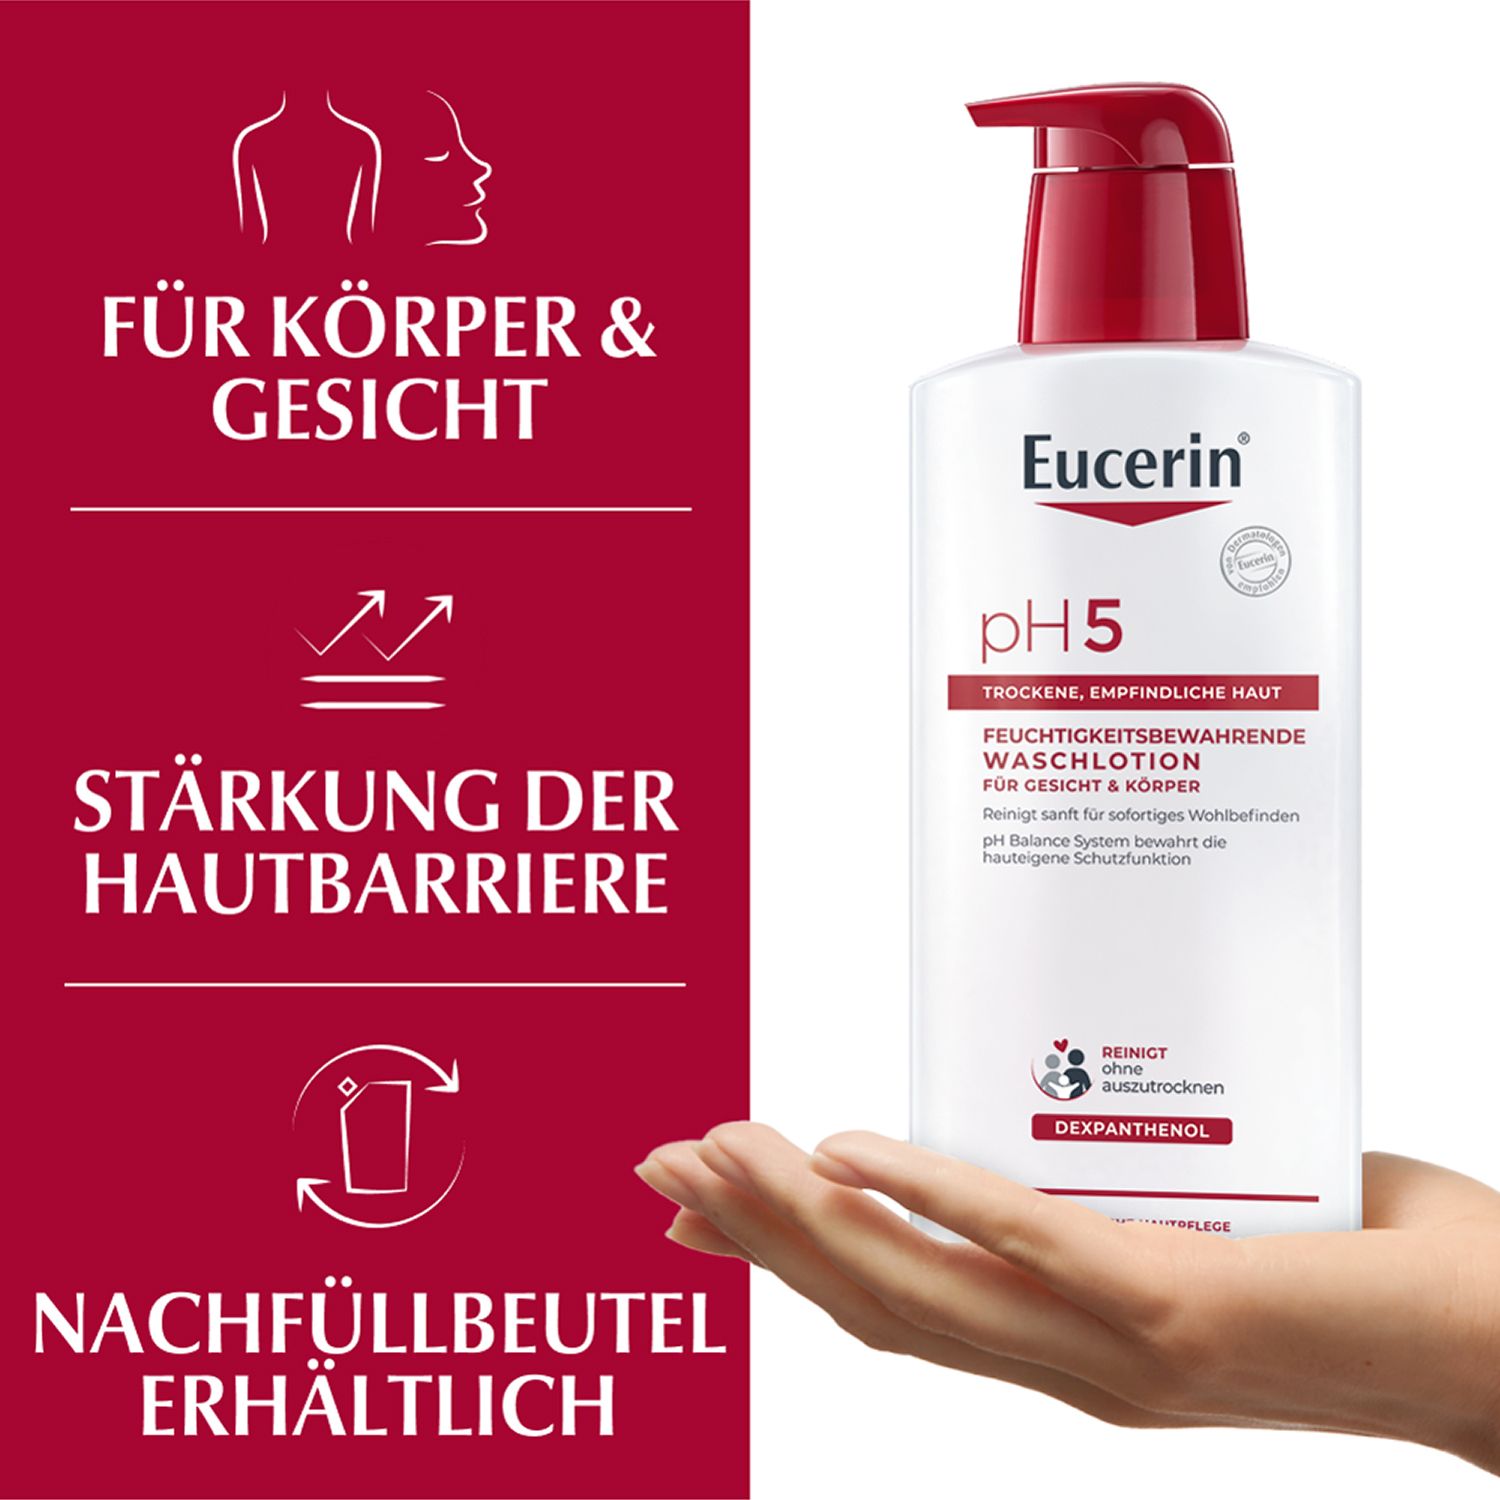 Eucerin® pH5 Waschlotion für Körper, Gesicht und Hände  – bietet empfindlicher und trockener Haut eine milde Reinigung & bewahrt die Schutzfunktion der Haut- Jetzt 20 % sparen* mit eucerin20